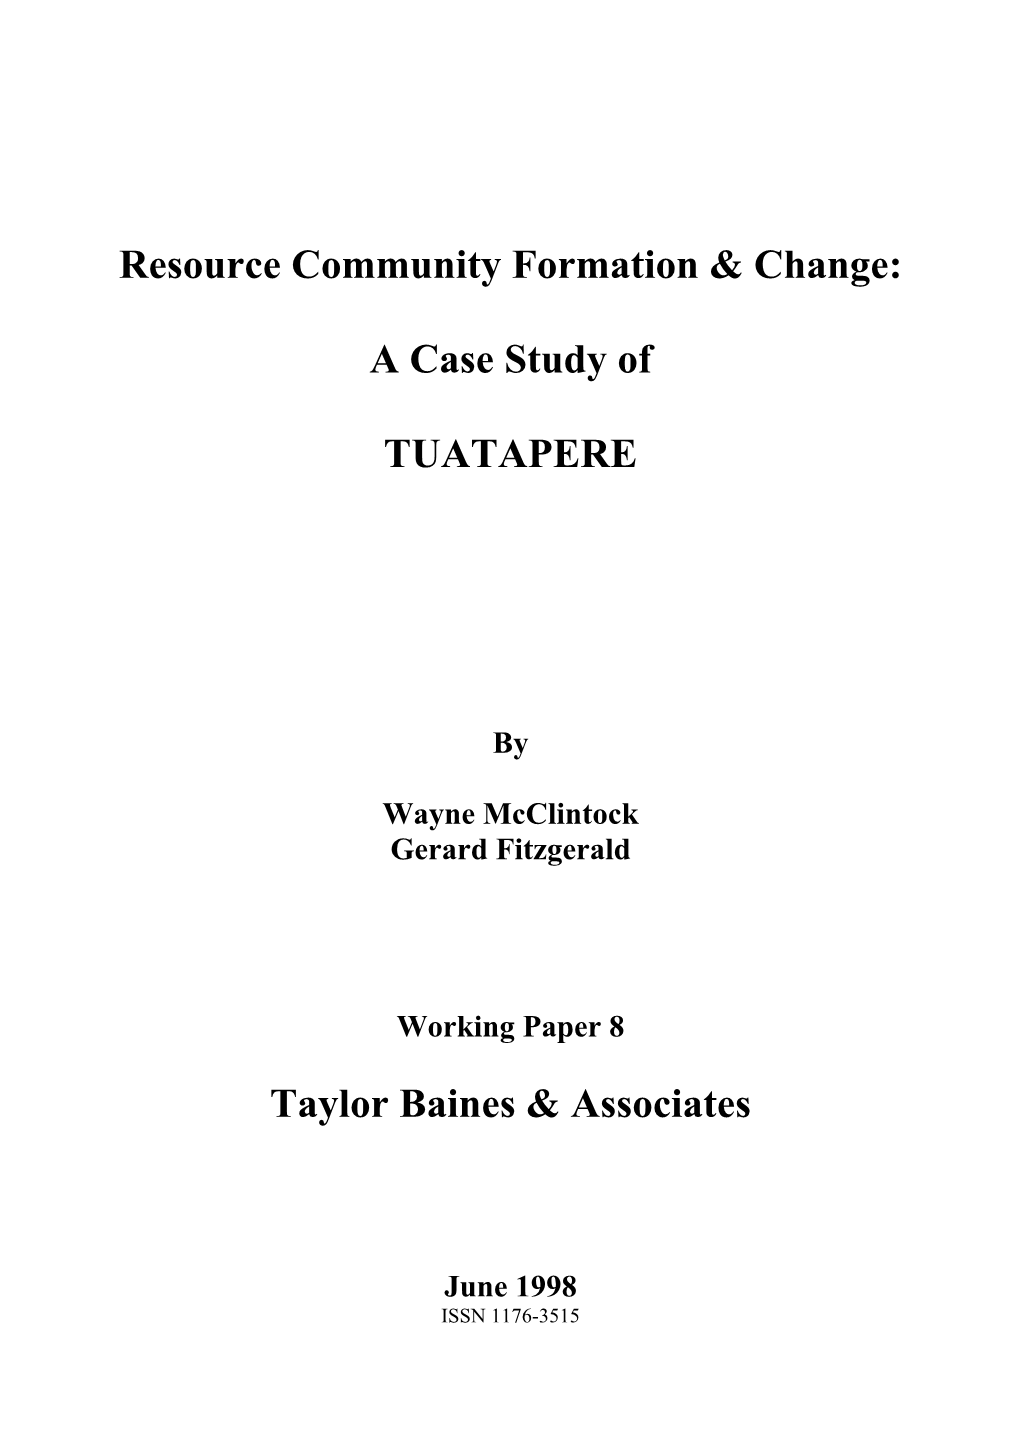 Tuatapere Case Study